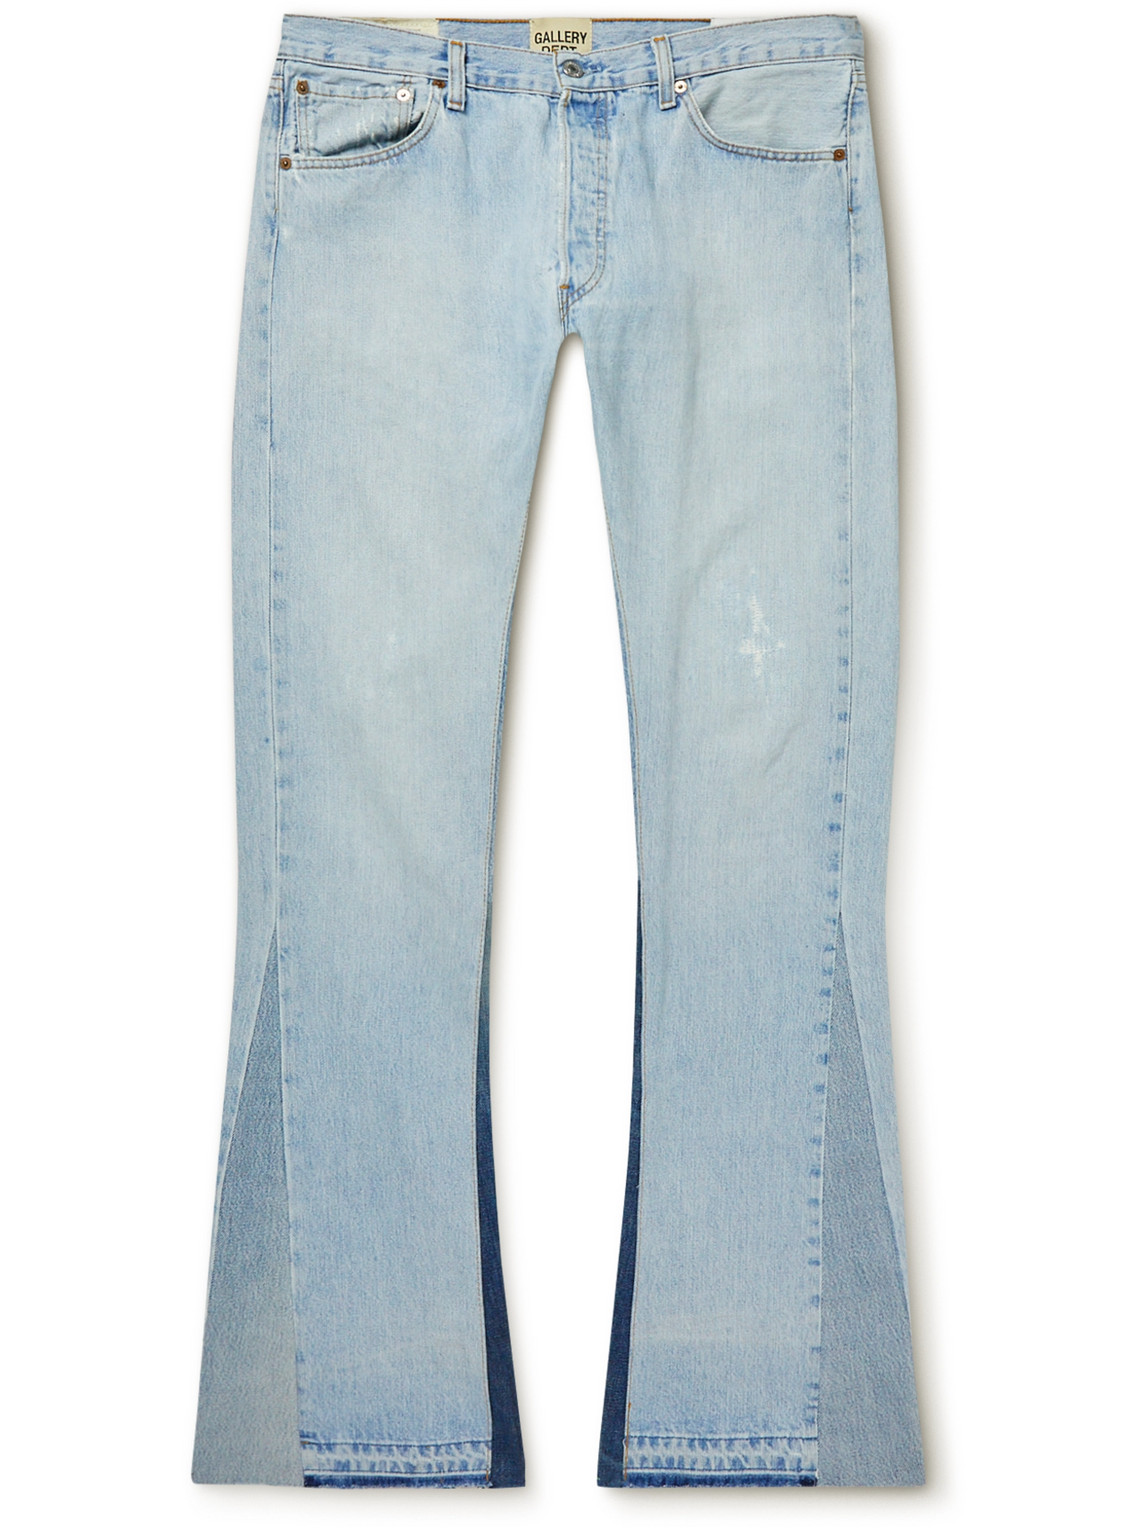 GALLERY DEPT. Jeans for Men | ModeSens